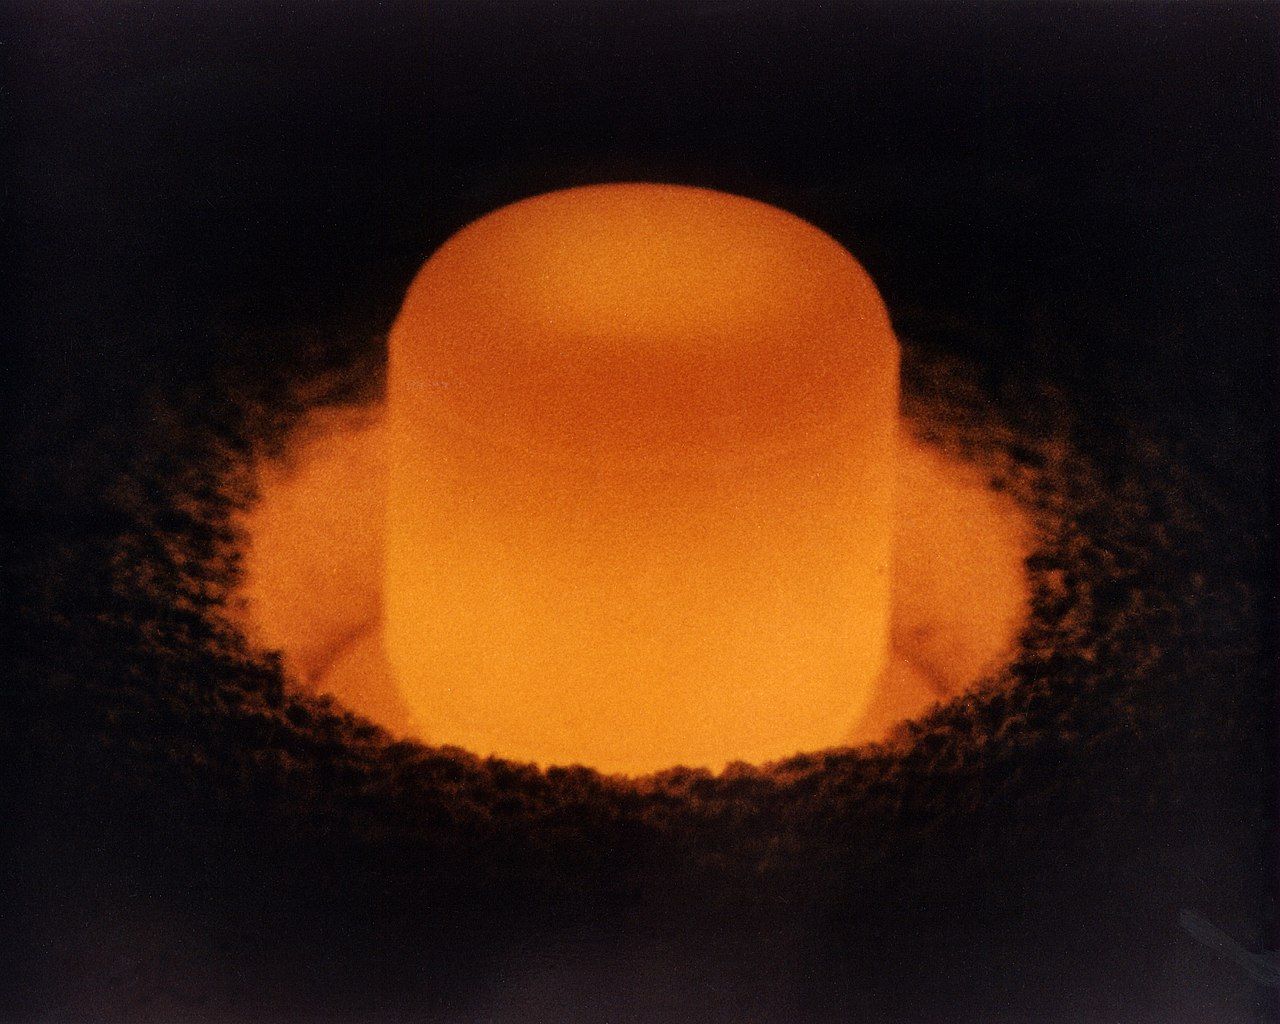 plutonium 238 